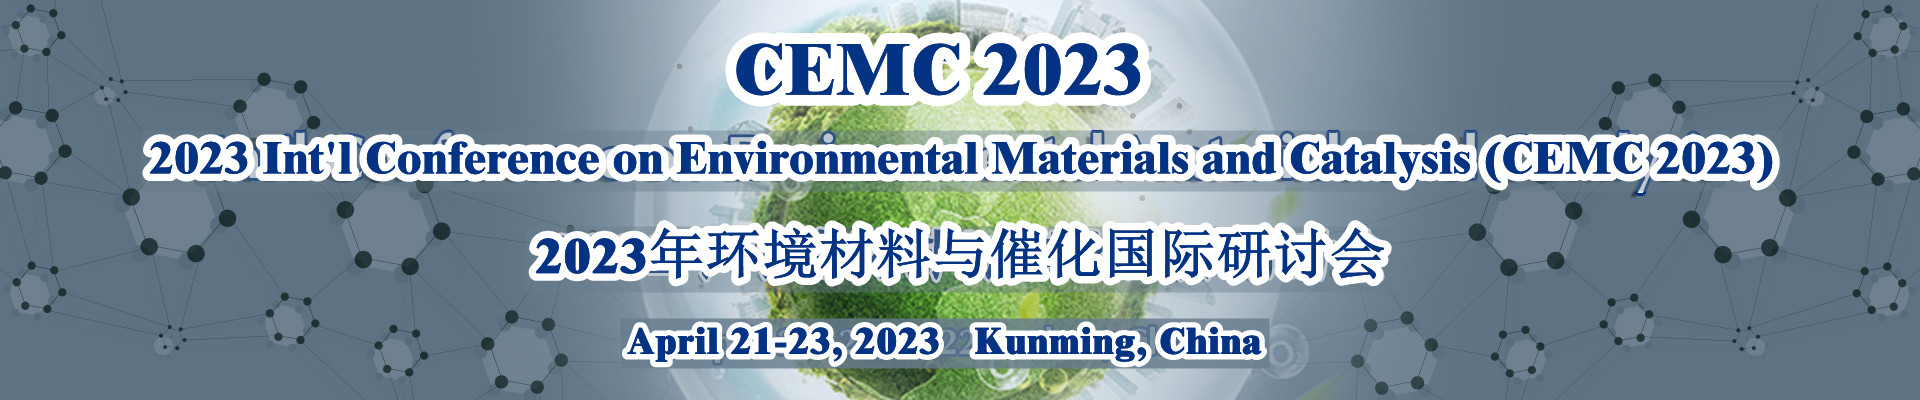 2023年环境材料与催化国际研讨会(CEMC 2023)